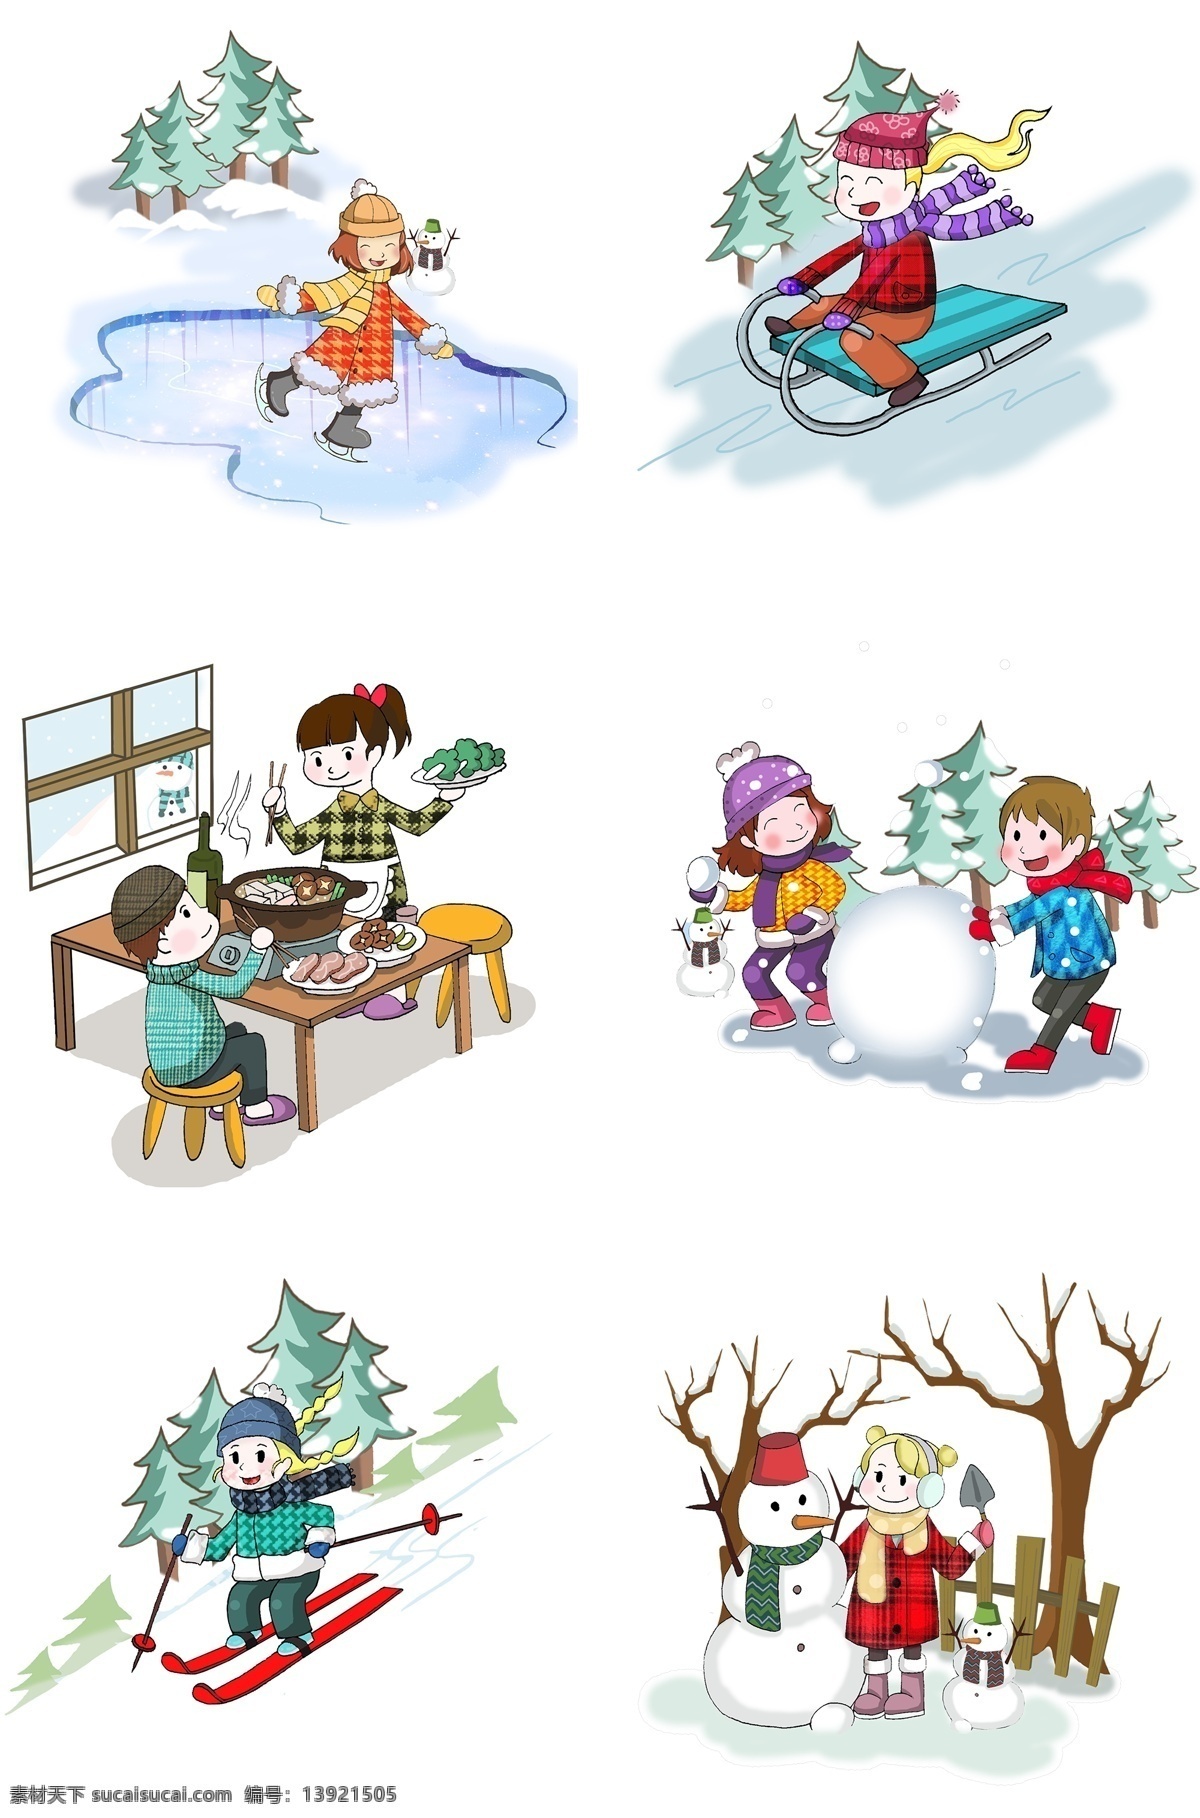 冬季 冬天 卡通 人物 活动 场景 合集 可爱 美女 冰面 滑冰 雪橇滑雪 在家吃火锅 一堆情侣玩雪 可爱雪人 滑雪